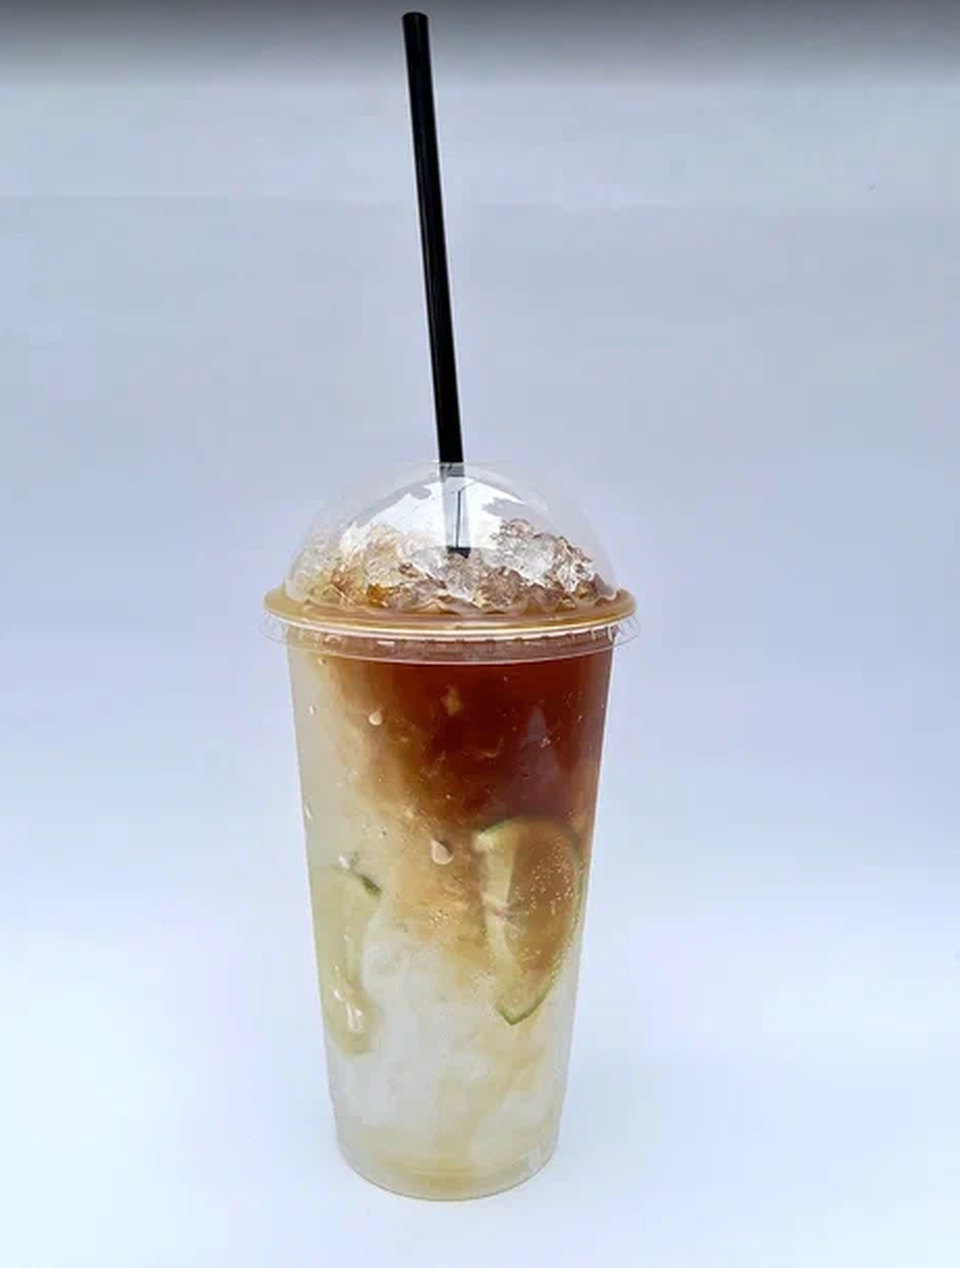 Тоник Кофе - 160 ₽, заказать онлайн.